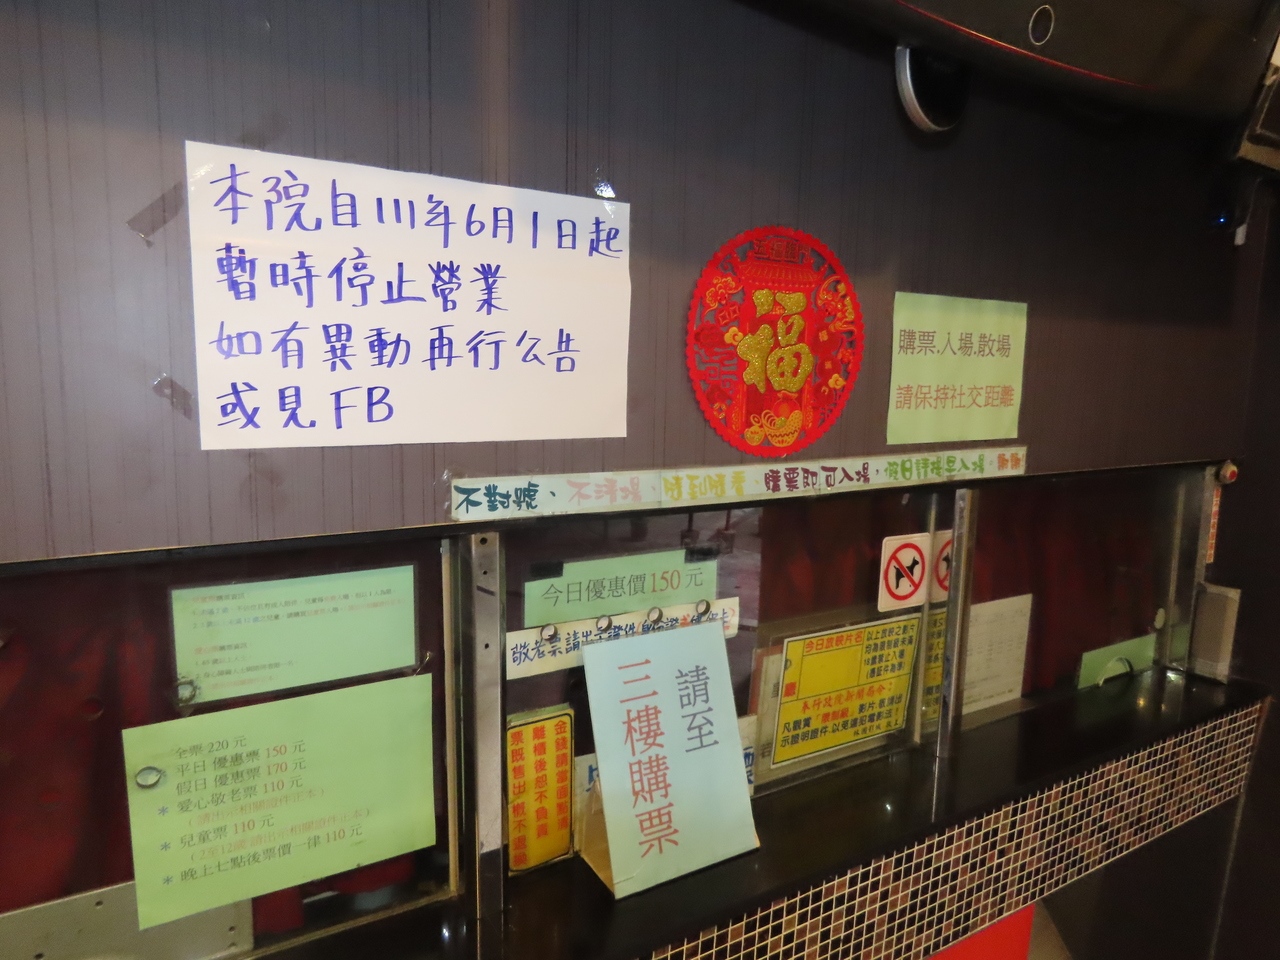 一樓封閉的櫃檯寫著「本院自111年6月1日起暫時停止營業，如有異動再行公告或見FB」。記者李定宇／攝影 